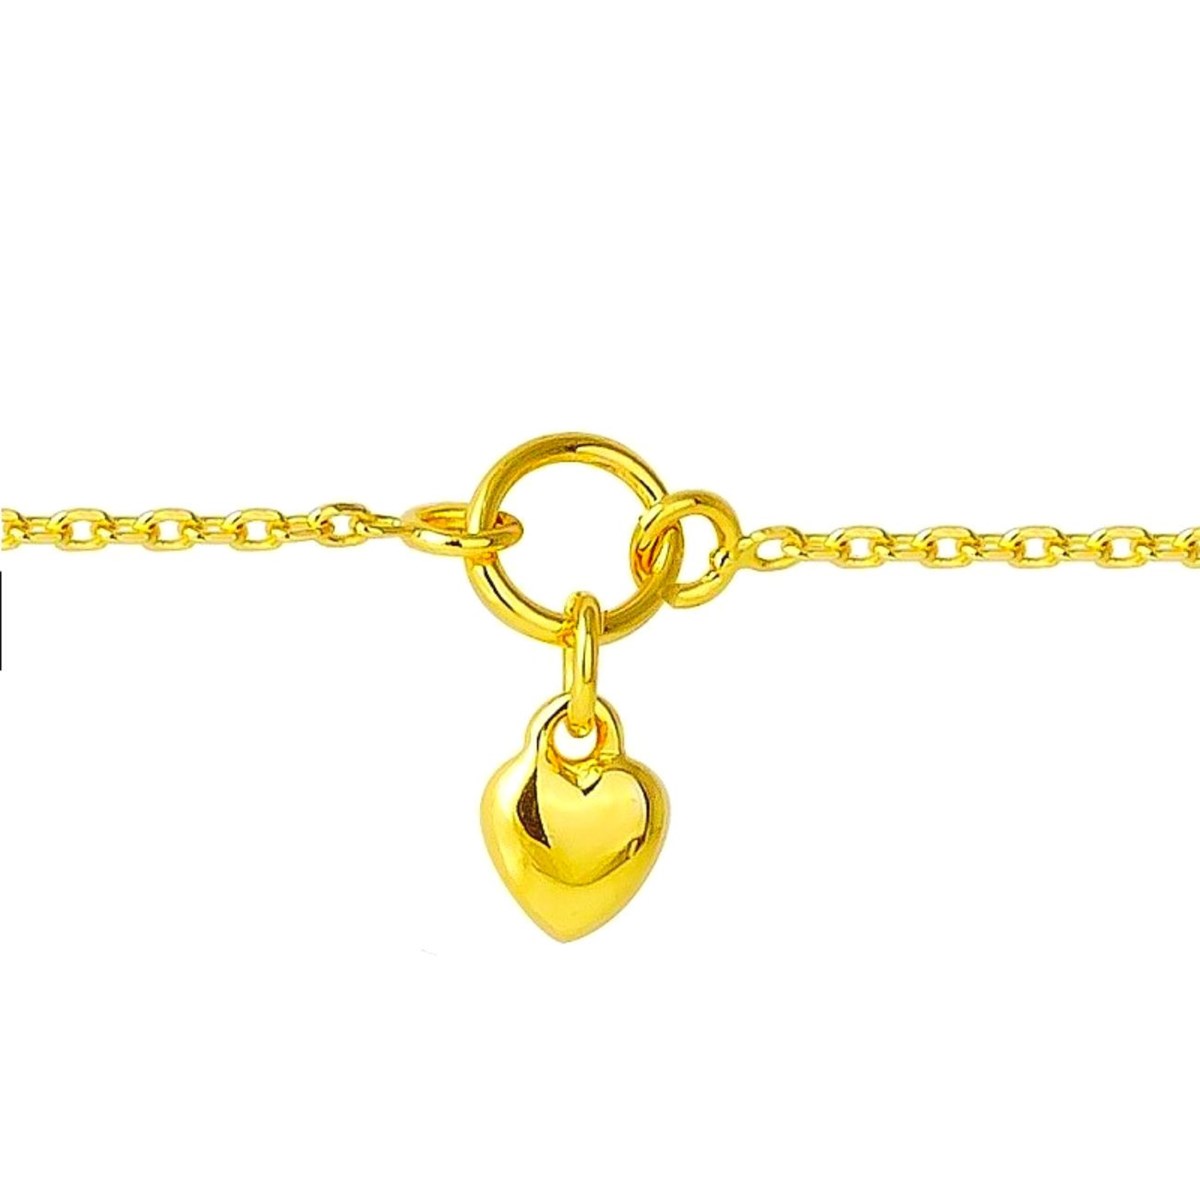 Bracelet de cheville chevillère breloque coeur en plaqué or 23-25 cm